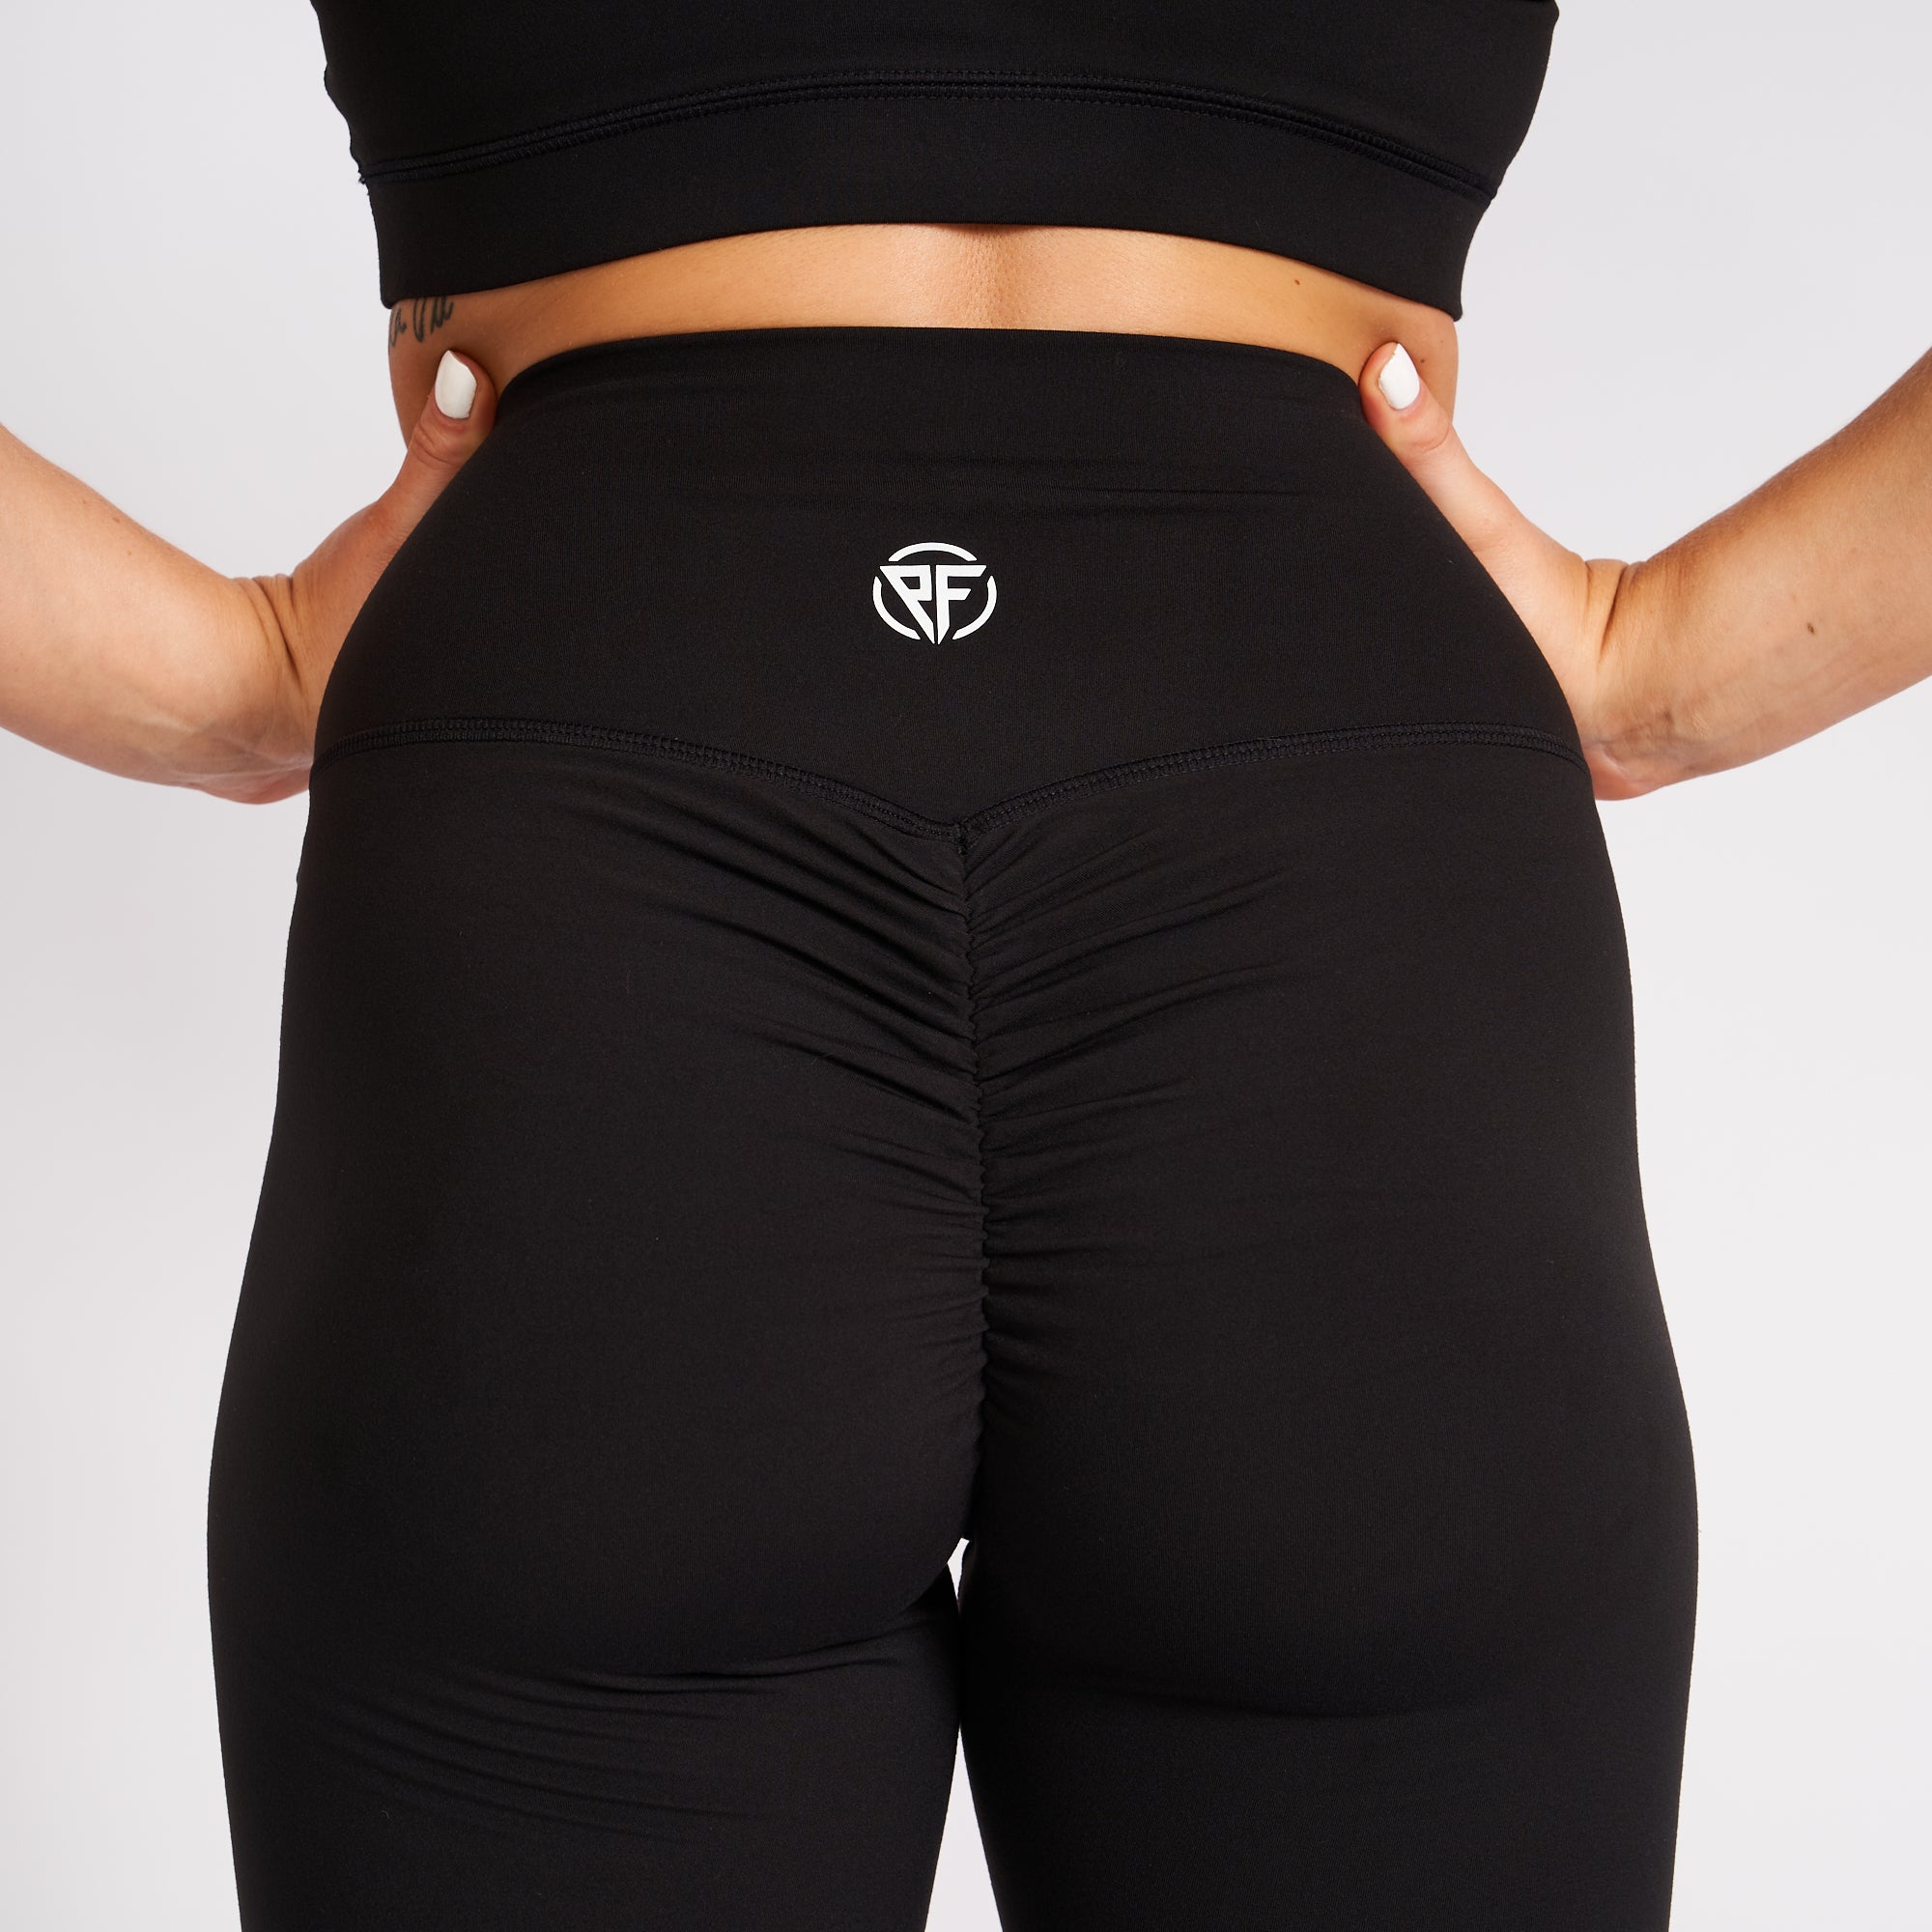 DRTY Fitness Womens Gym Yoga Pants Scrunch Butt Bum Contour Leggings Black  S/M/L